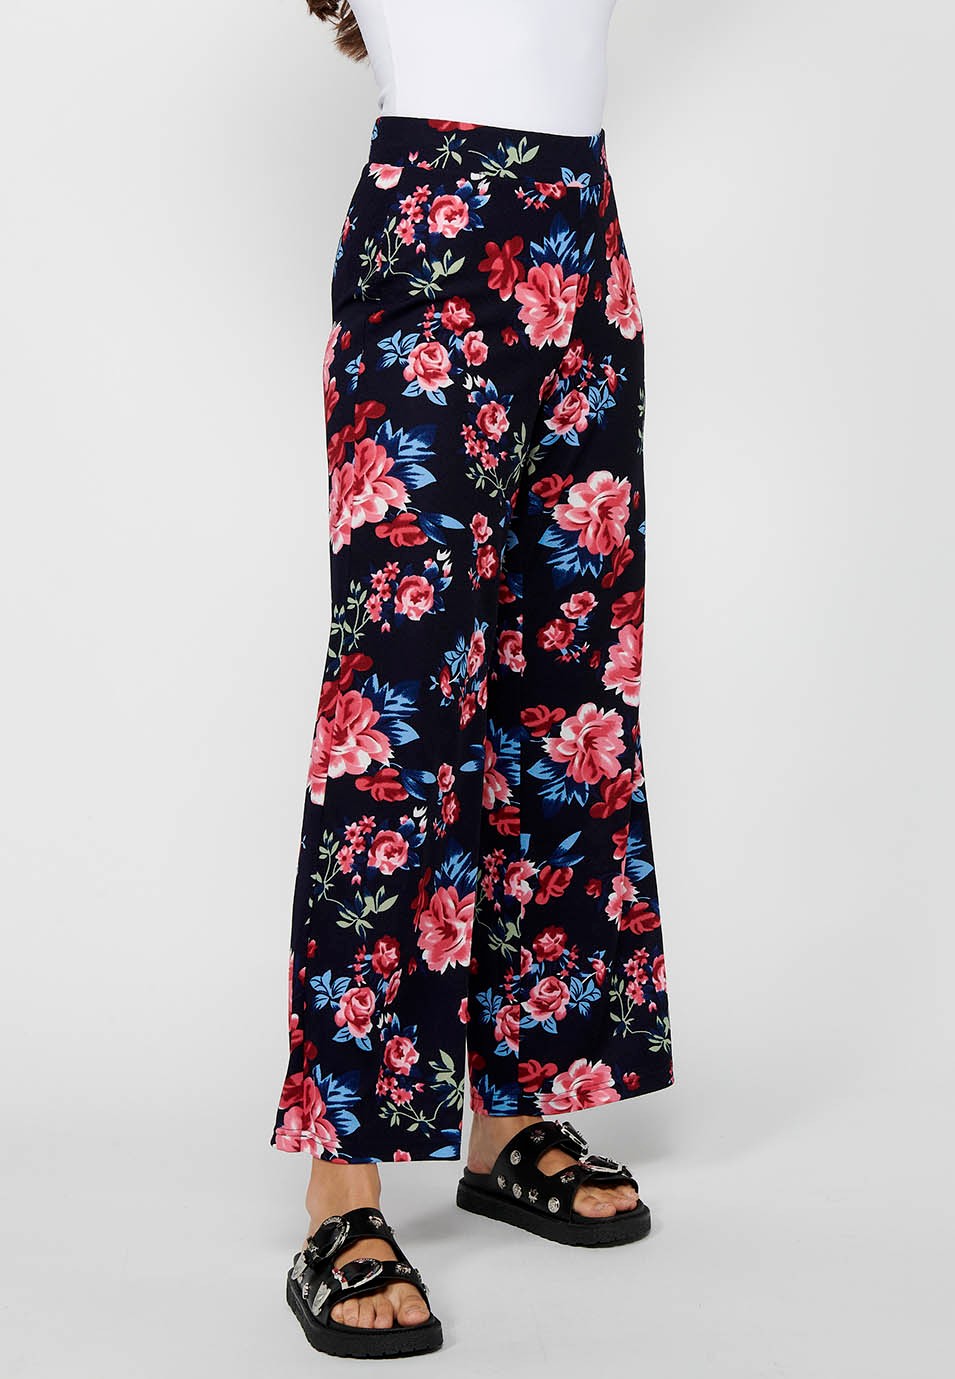 Pantalon long ample avec taille élastique caoutchoutée et imprimé floral Marine pour Femme 4